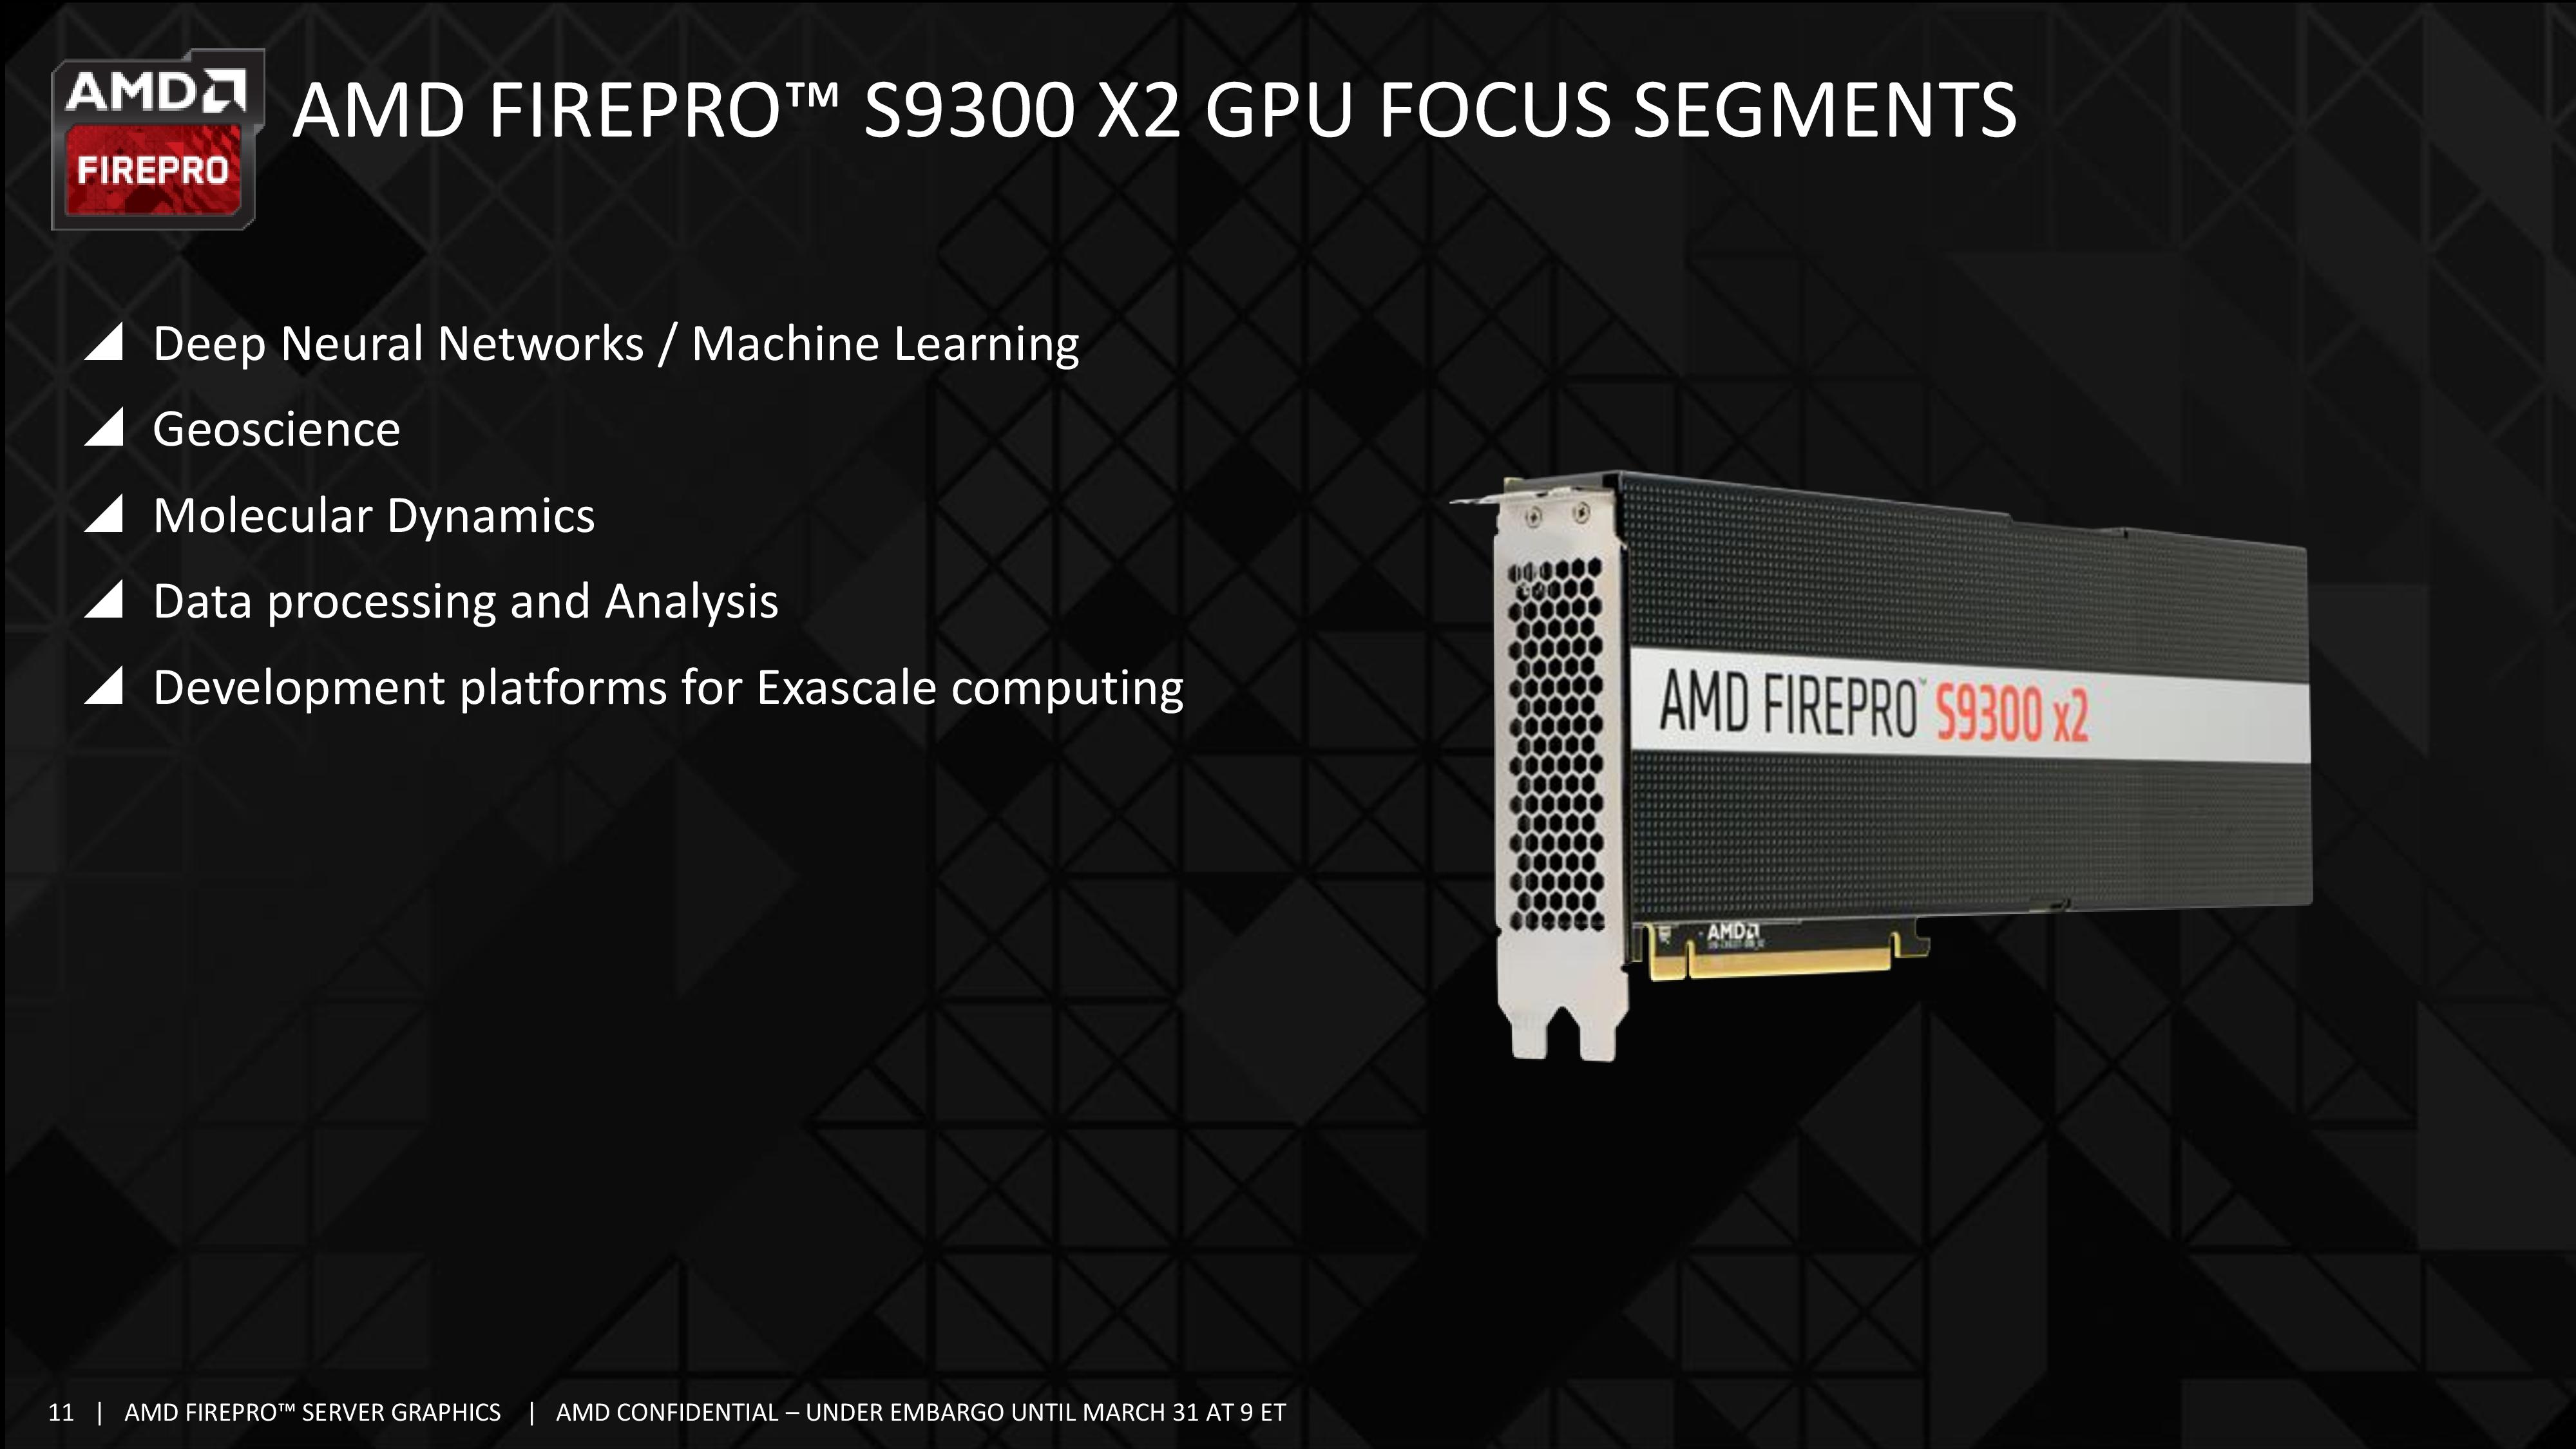 AMD FirePro S9300